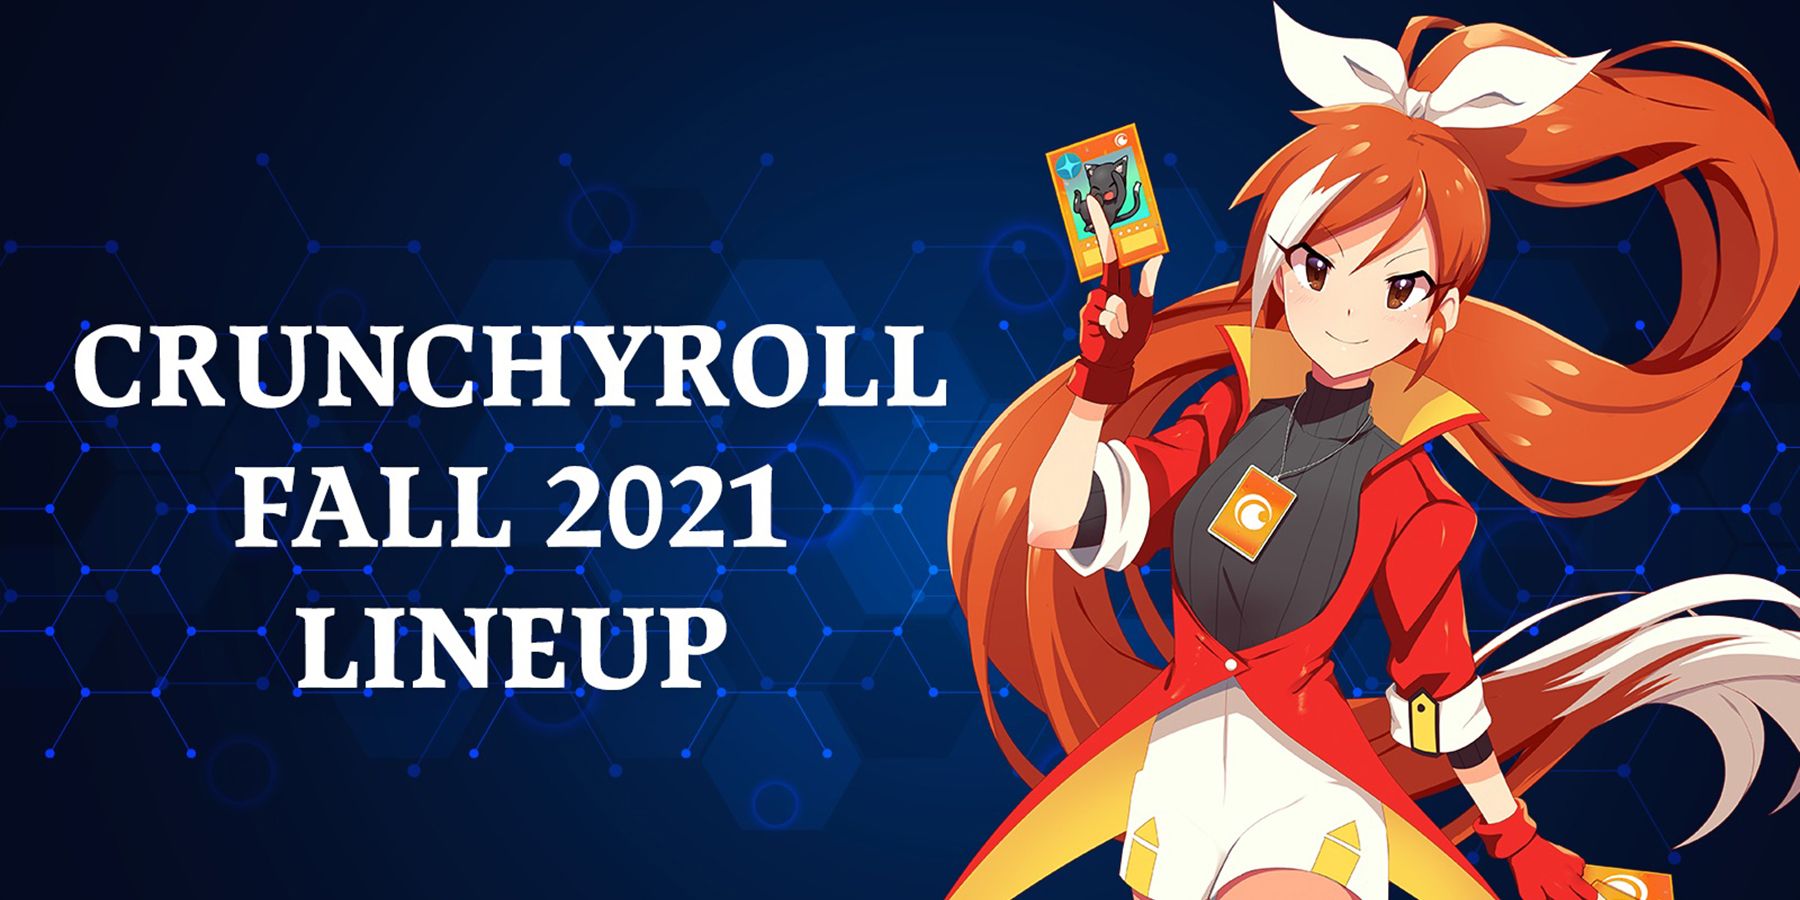 Crunchyroll paljastaa jännittävän syksyn 2021 kokoonpanon, mukaan lukien Demon Slayer